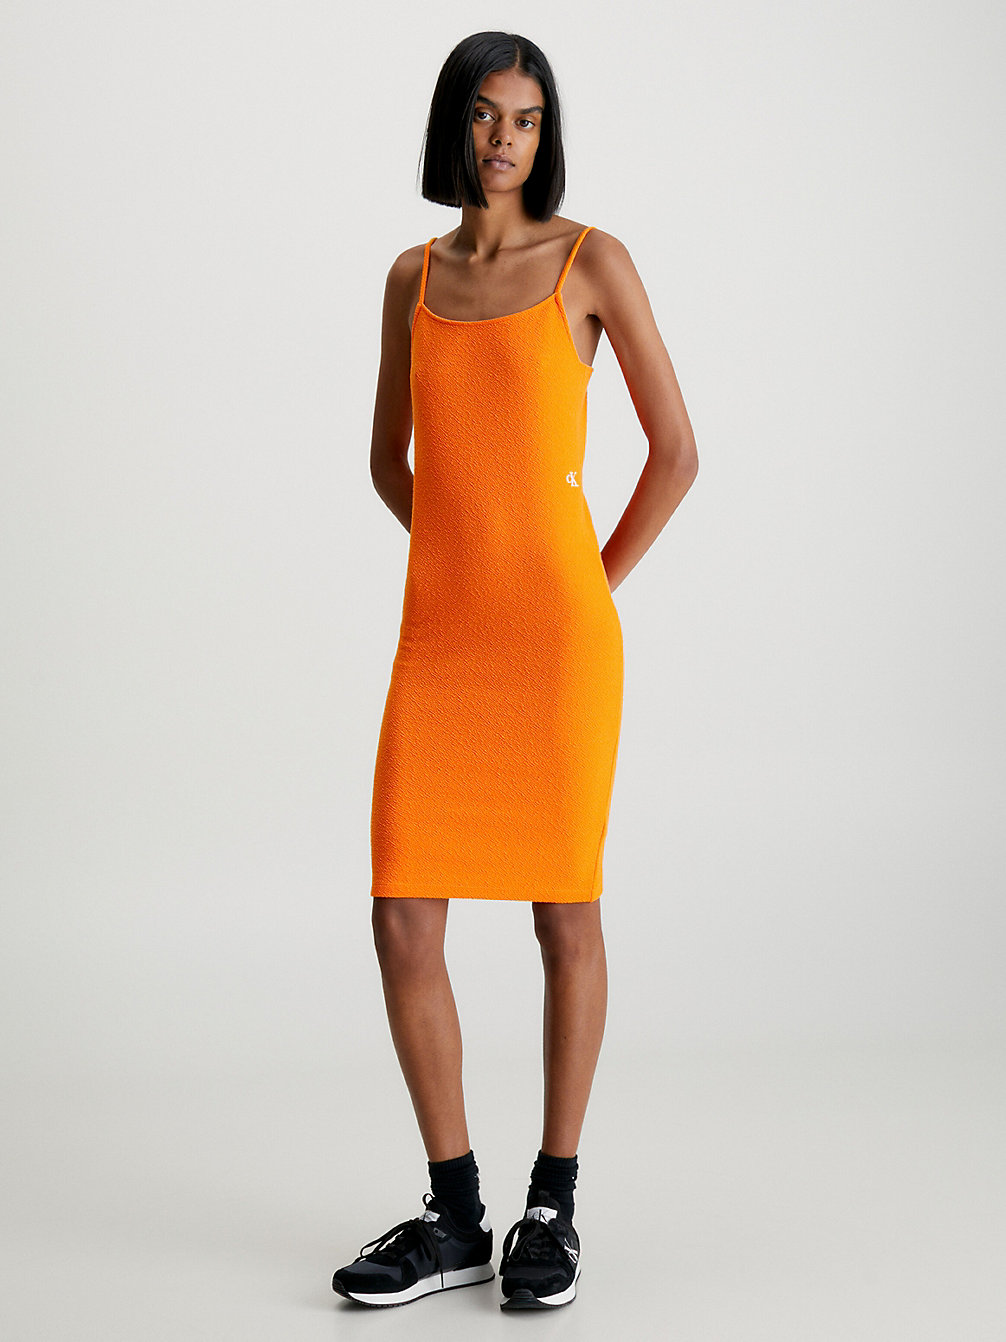 VIBRANT ORANGE > Sukienka Mini Z Marszczonego, Rozciągliwego Materiału > undefined Kobiety - Calvin Klein